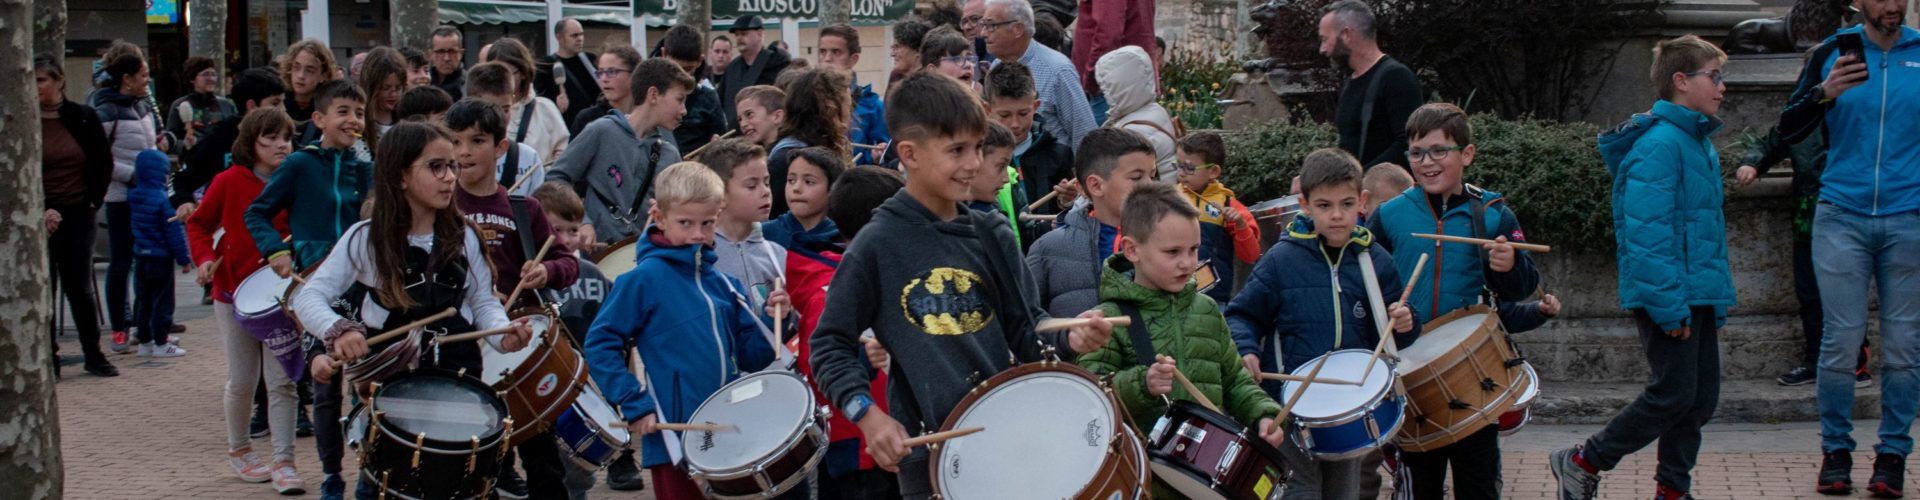 Cultura i tradició intensifiquen l’agenda de Morella al mes d’abril